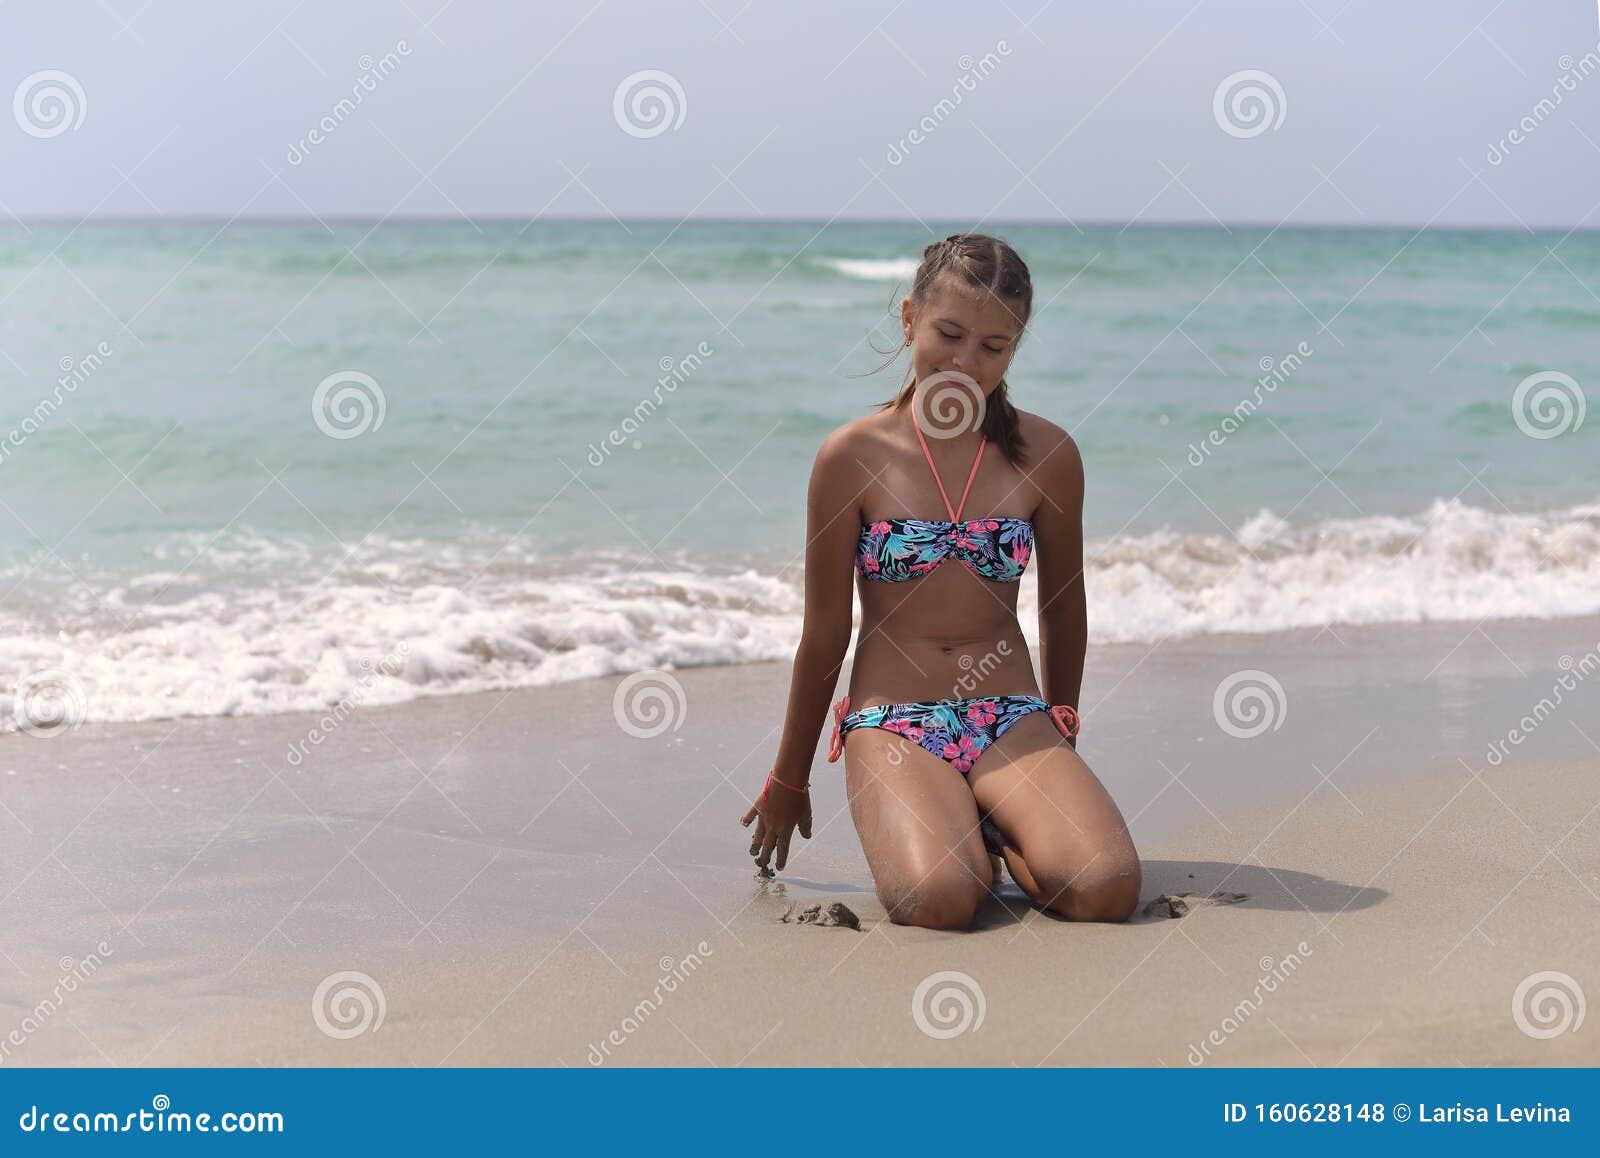 courtney brushett add sexy nude beach teens photo